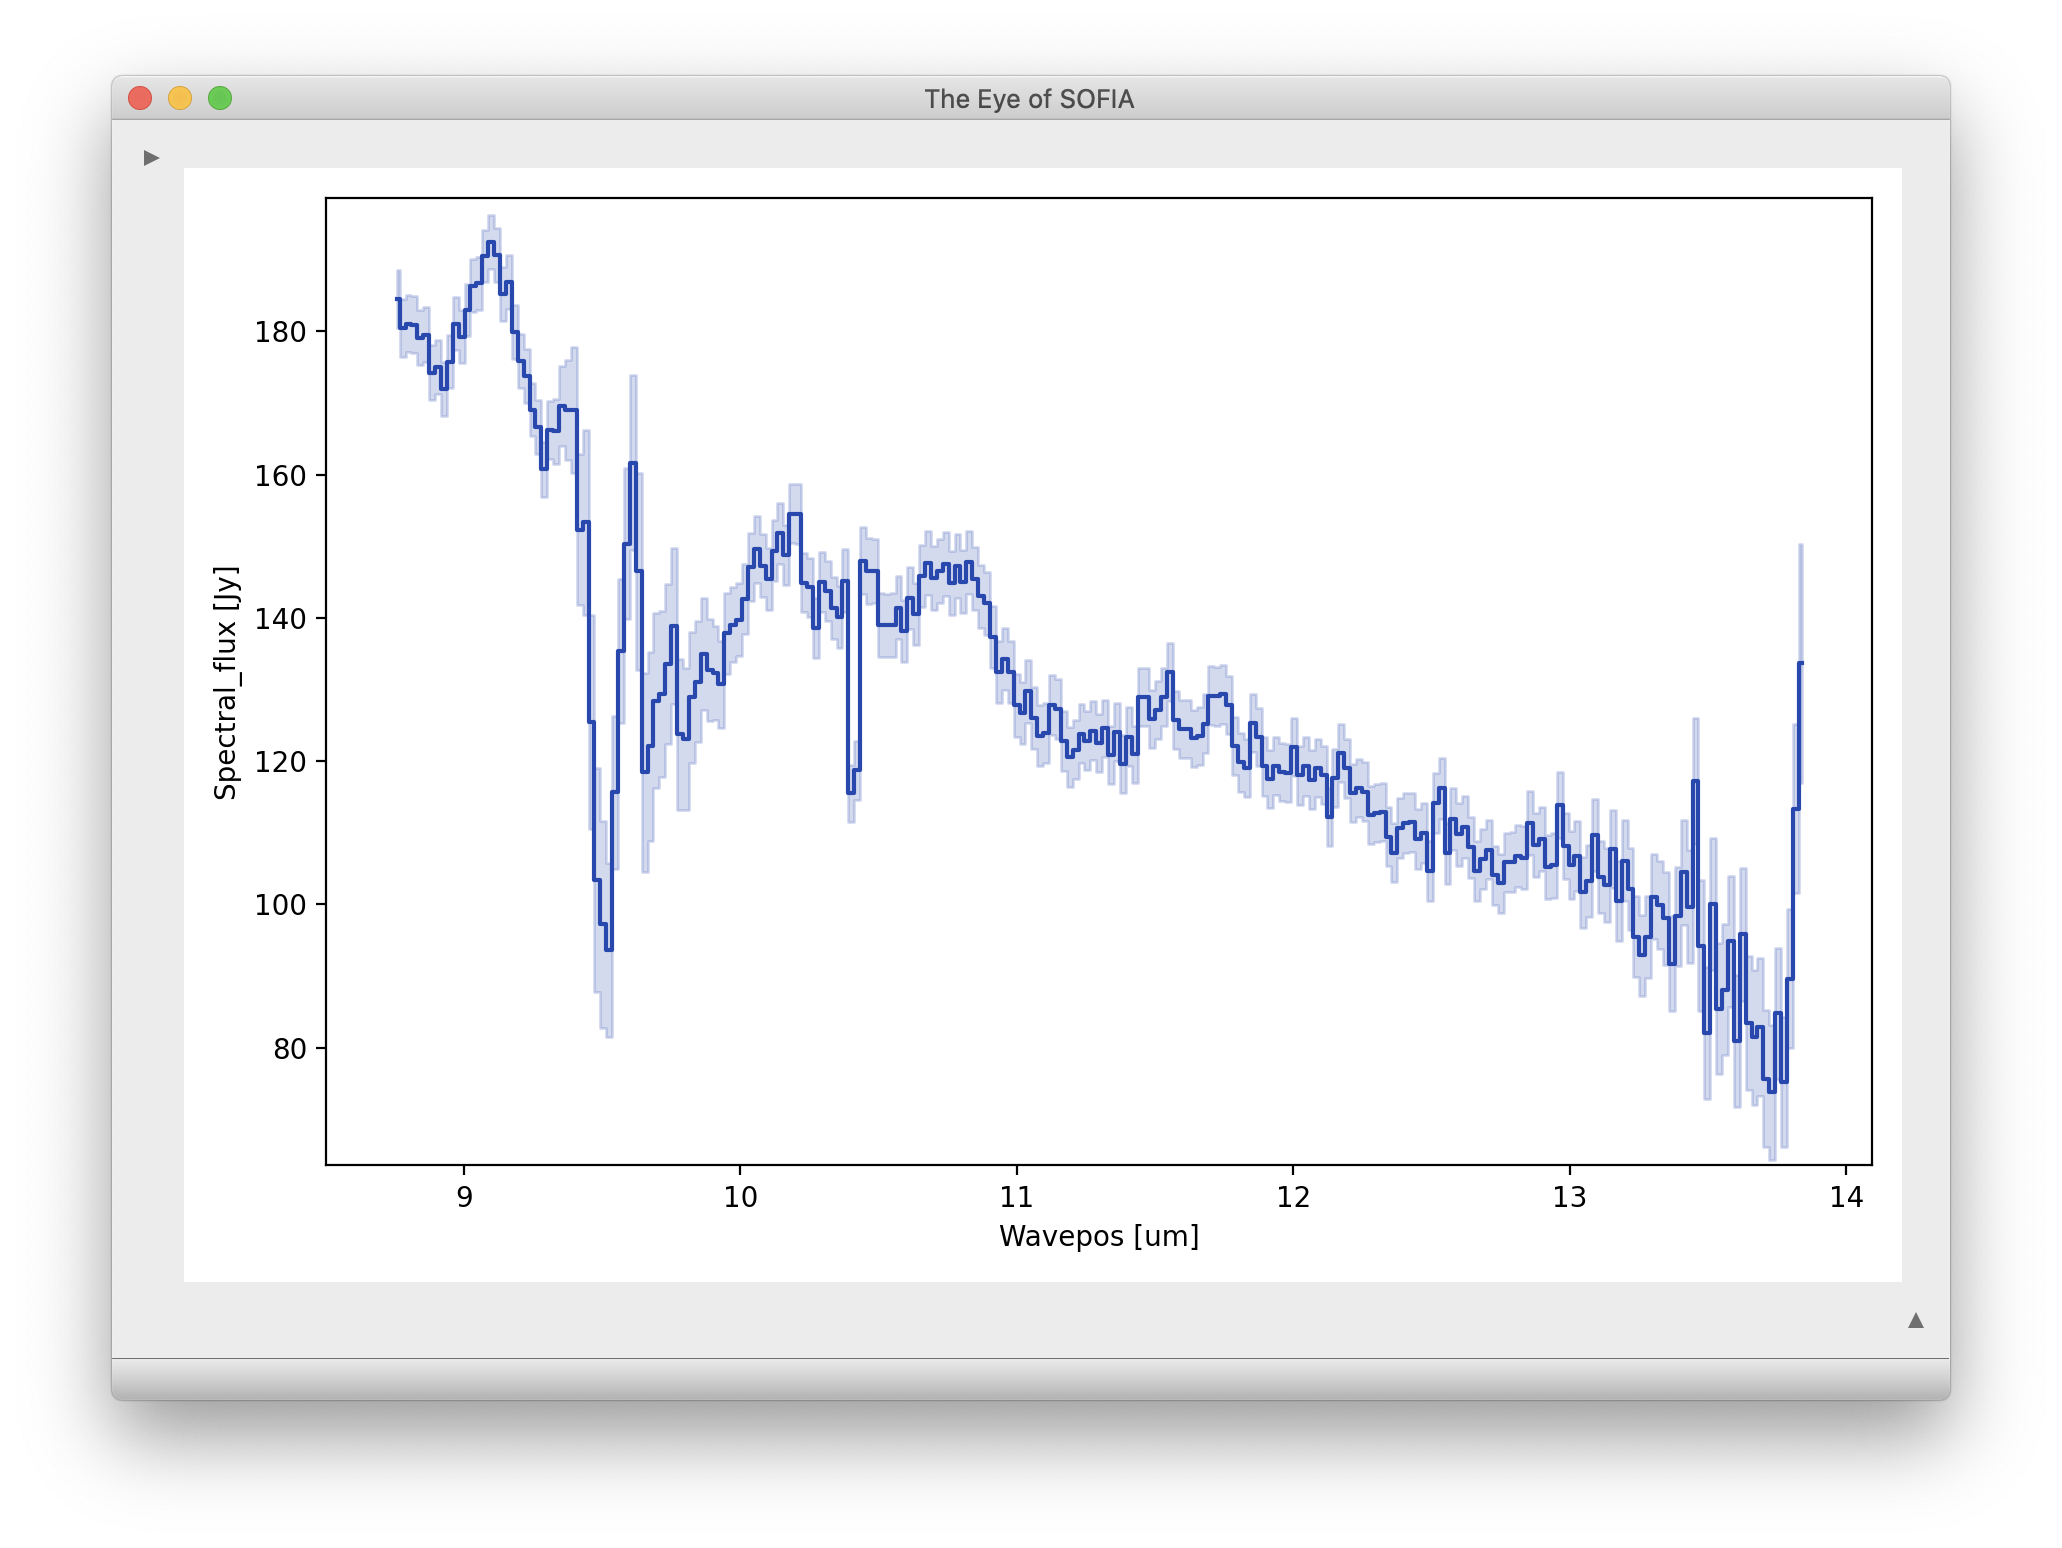 A GUI window showing a spectral trace plot, in Wavepos (um) vs. Spectral_flux (Jy).